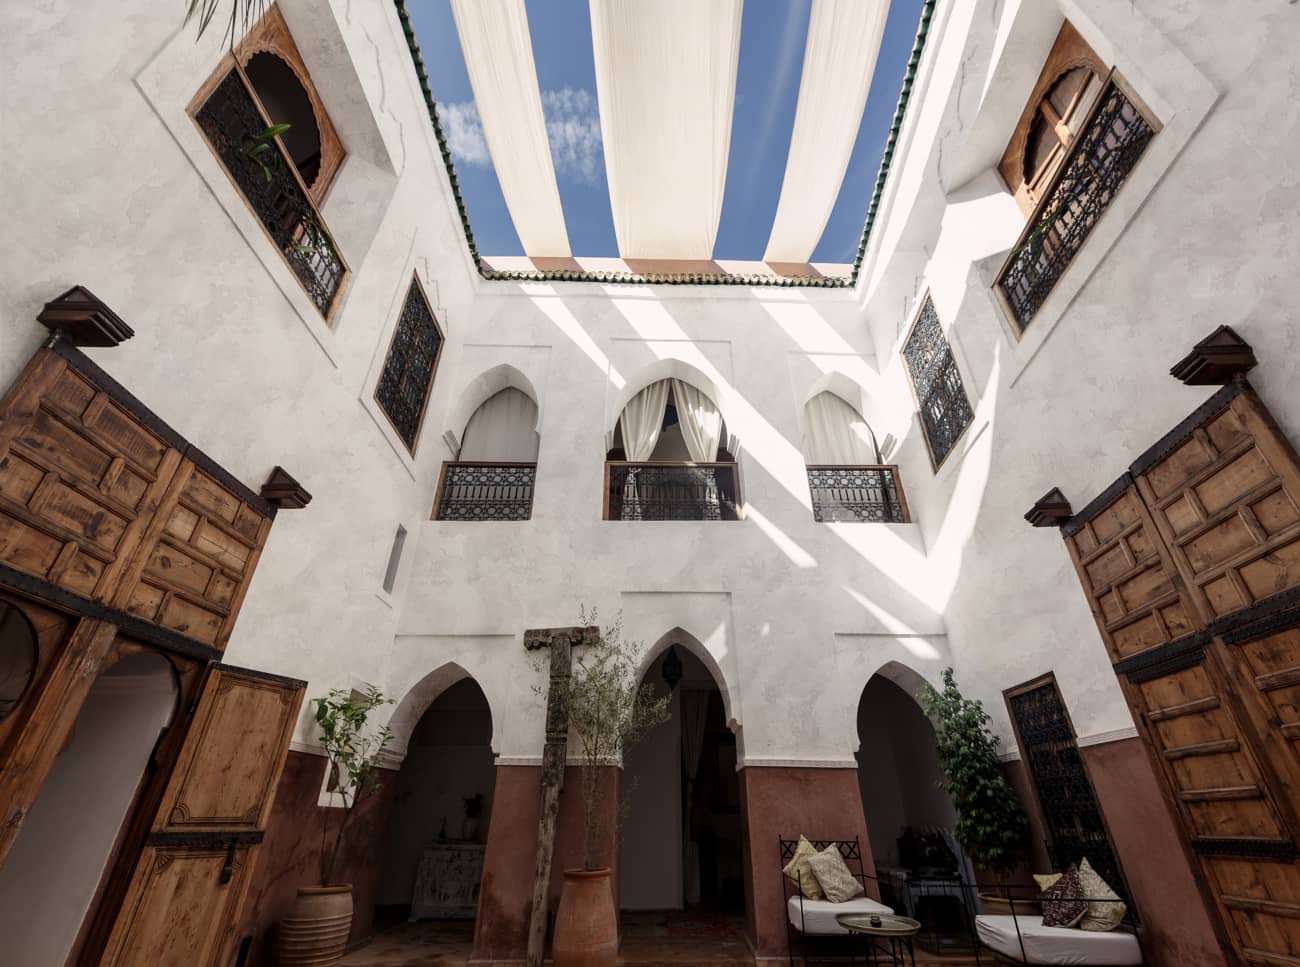 tadelakt on walls of Moroccan-inspired housing